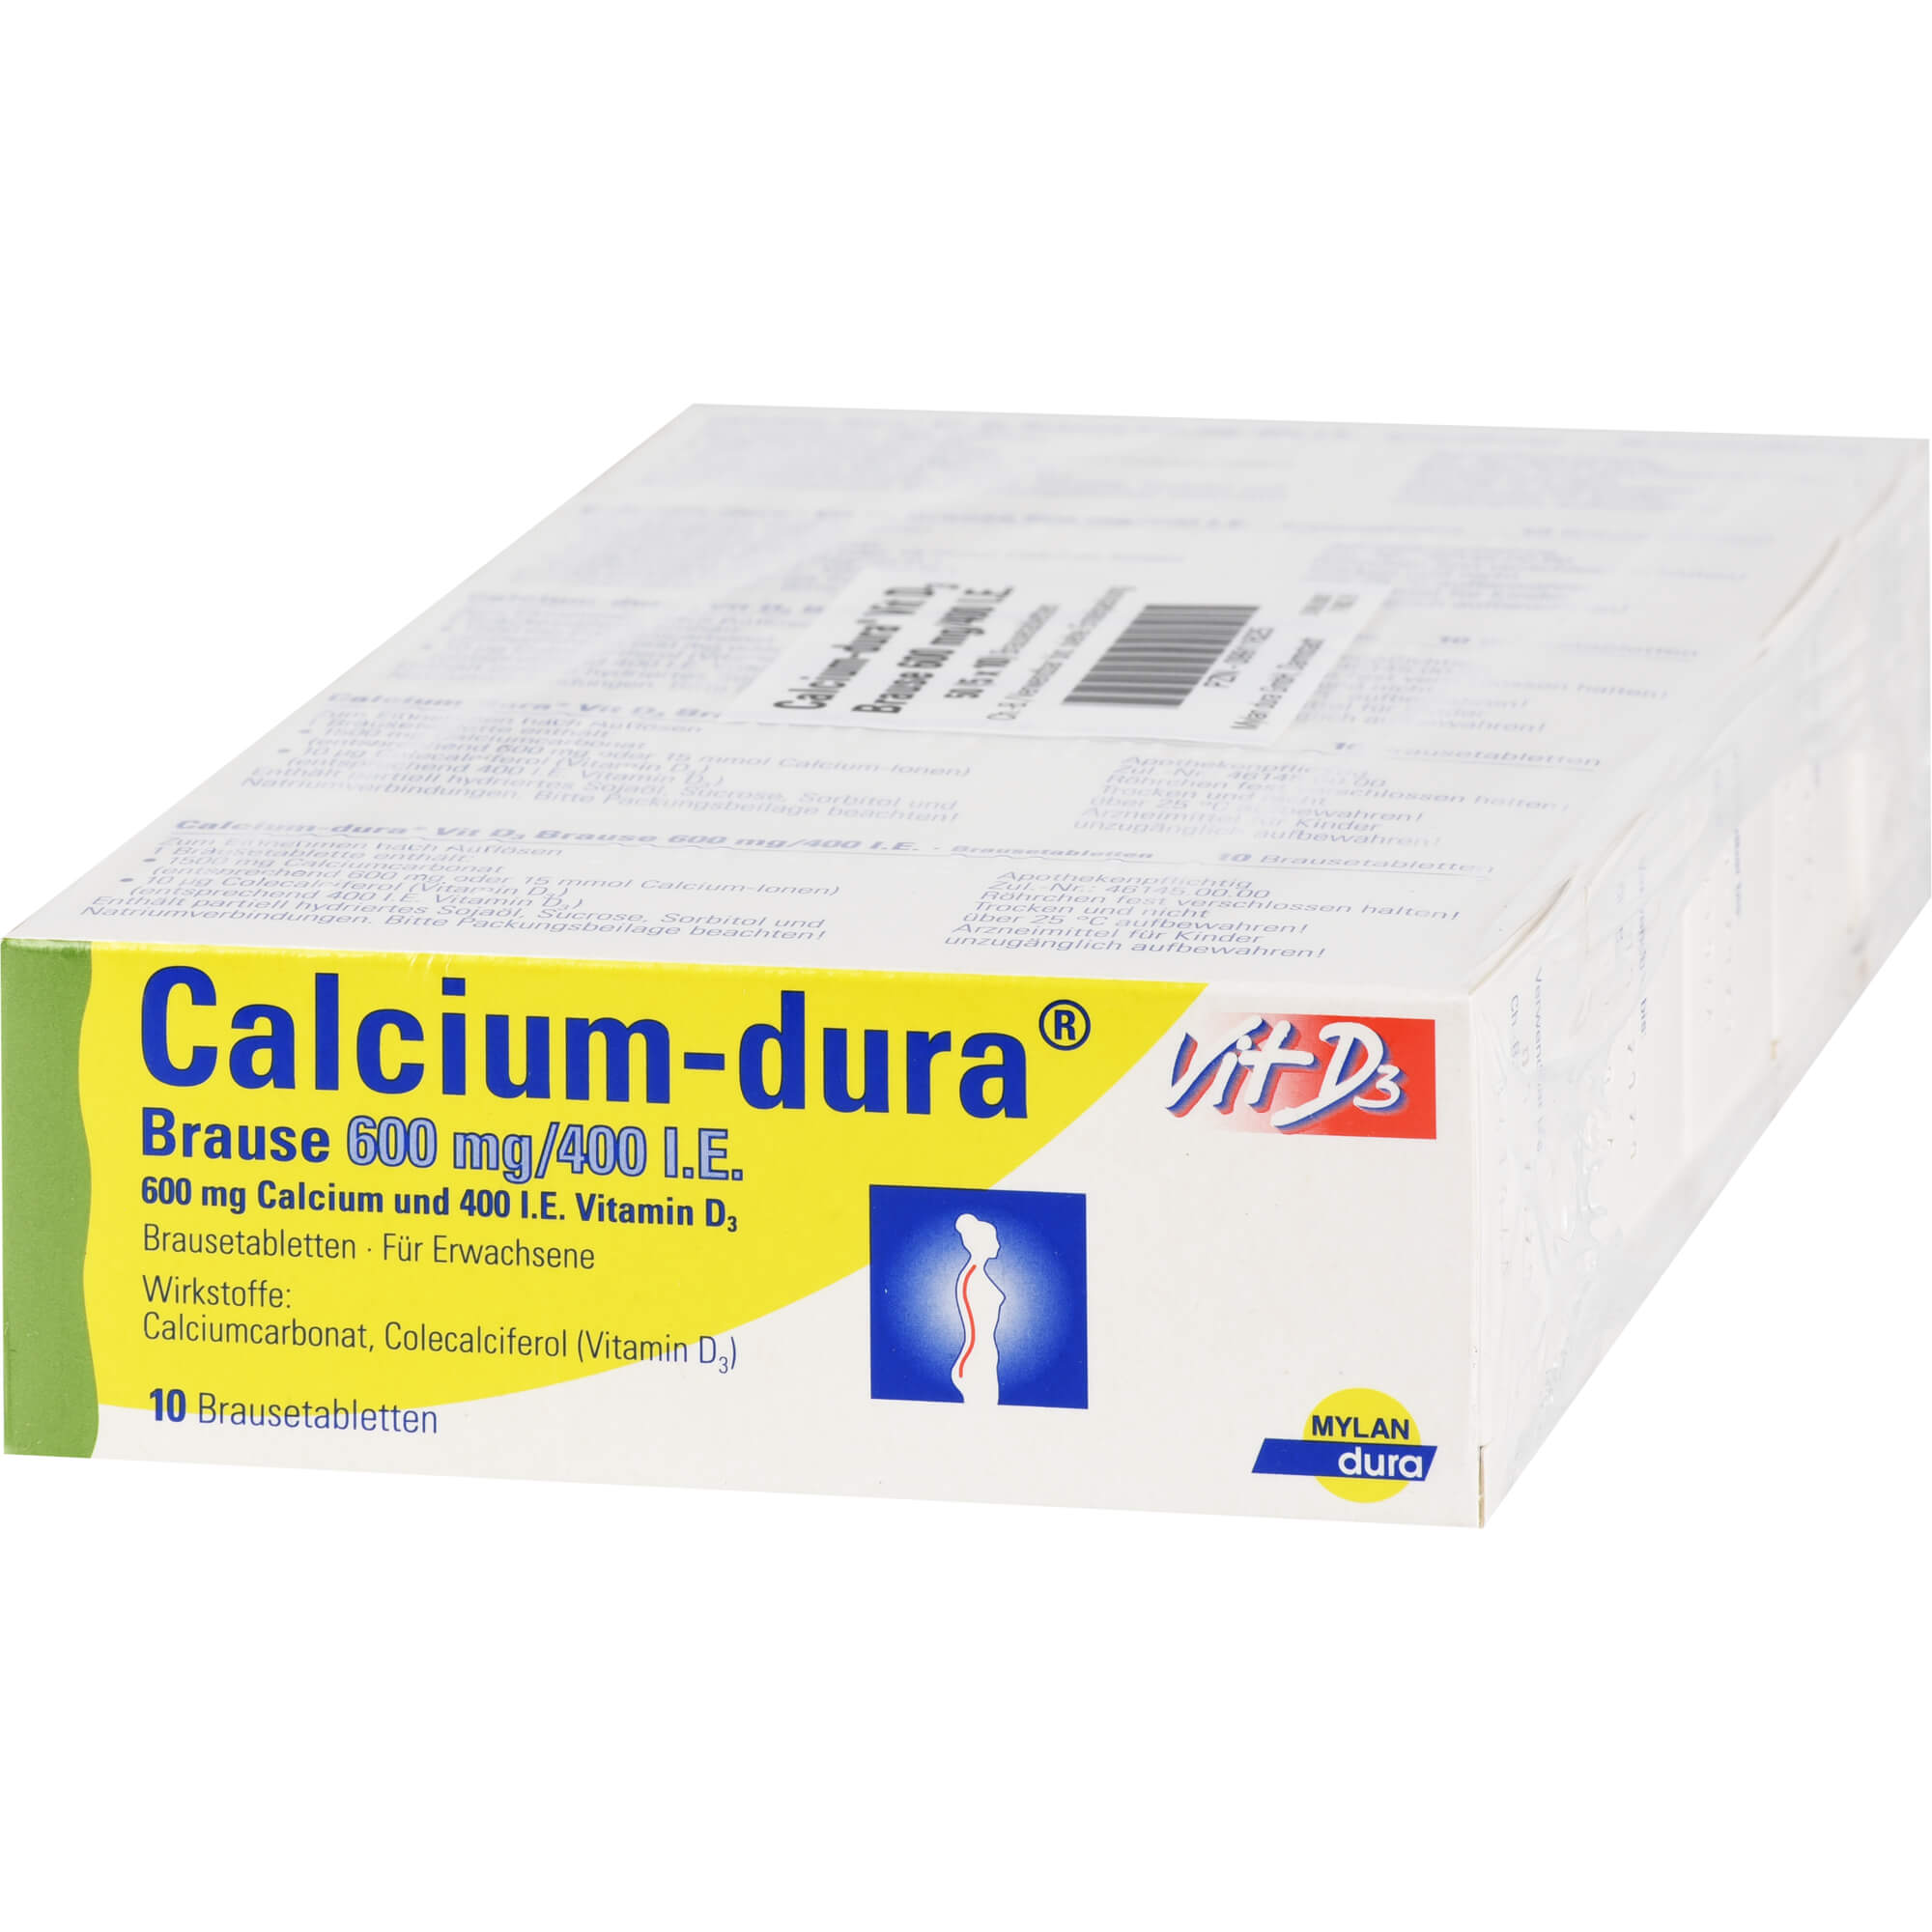 Vitamin-Mineralstoff-Kombination bei nachgewiesenem Calcium- und Vitamin D3-Mangel sowie zur unterstützenden Behandlung von Osteoporose.